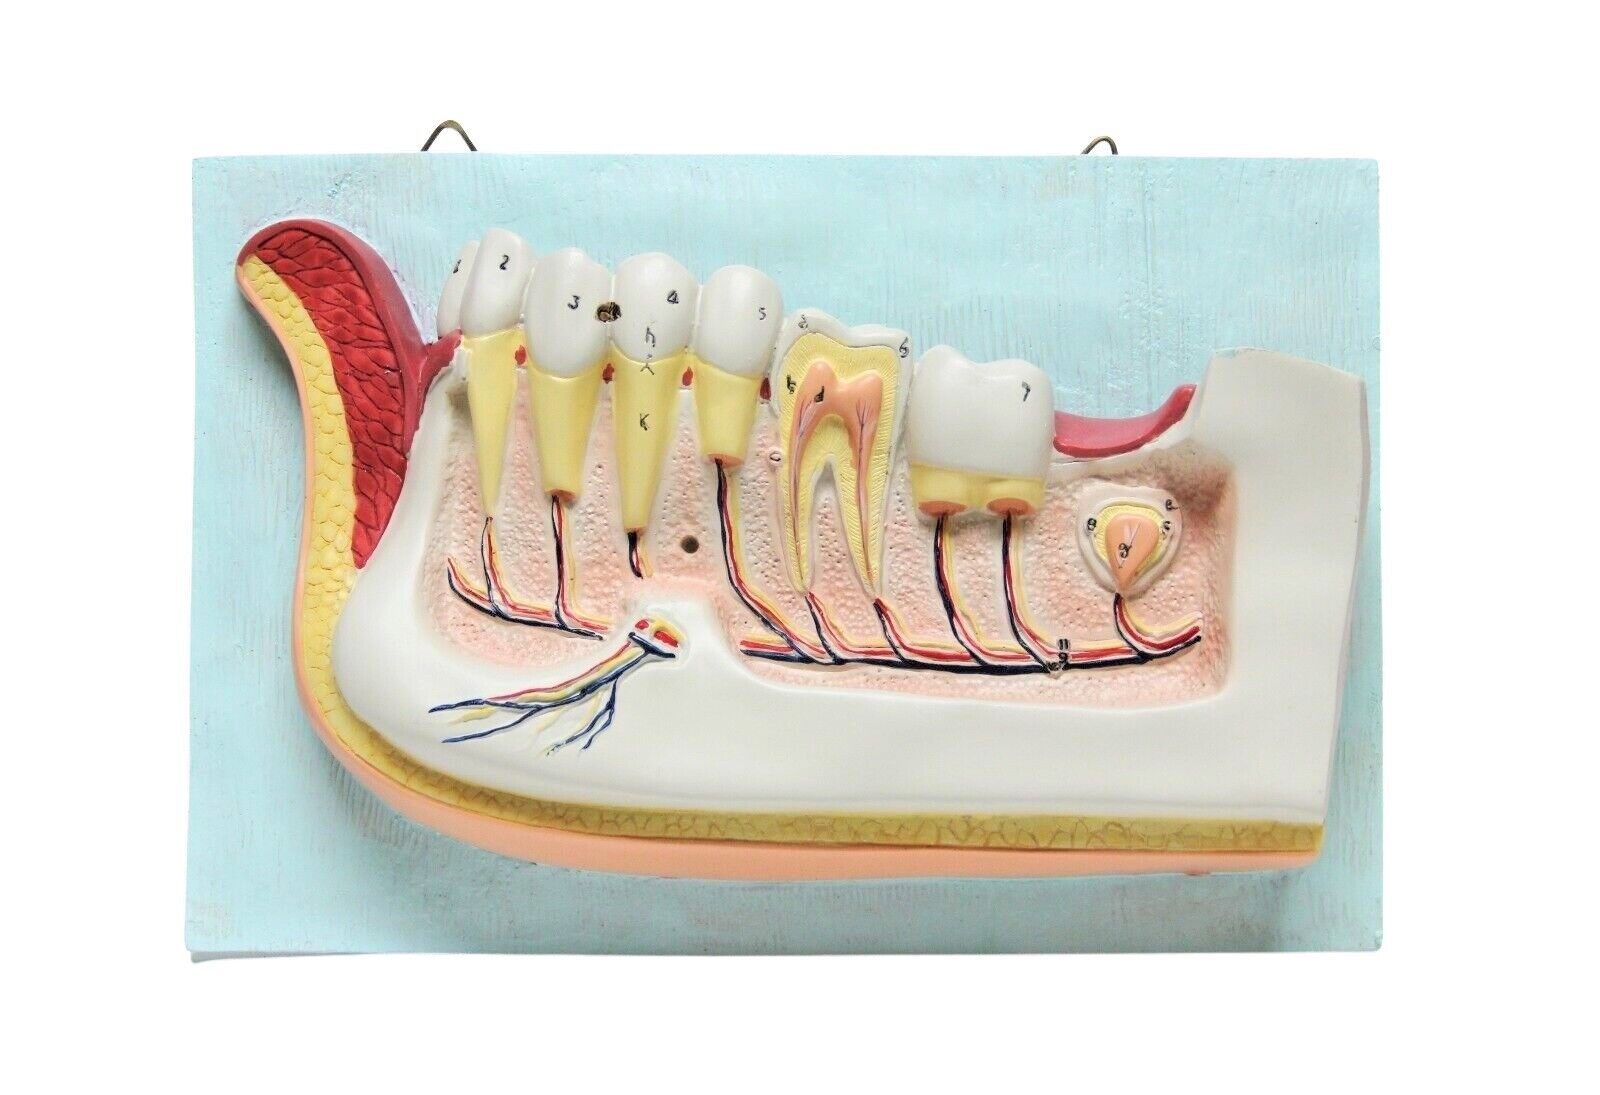 Dentist Dental Teeth Oral Anatomy Physiology Teaching Hanging Decoration Model